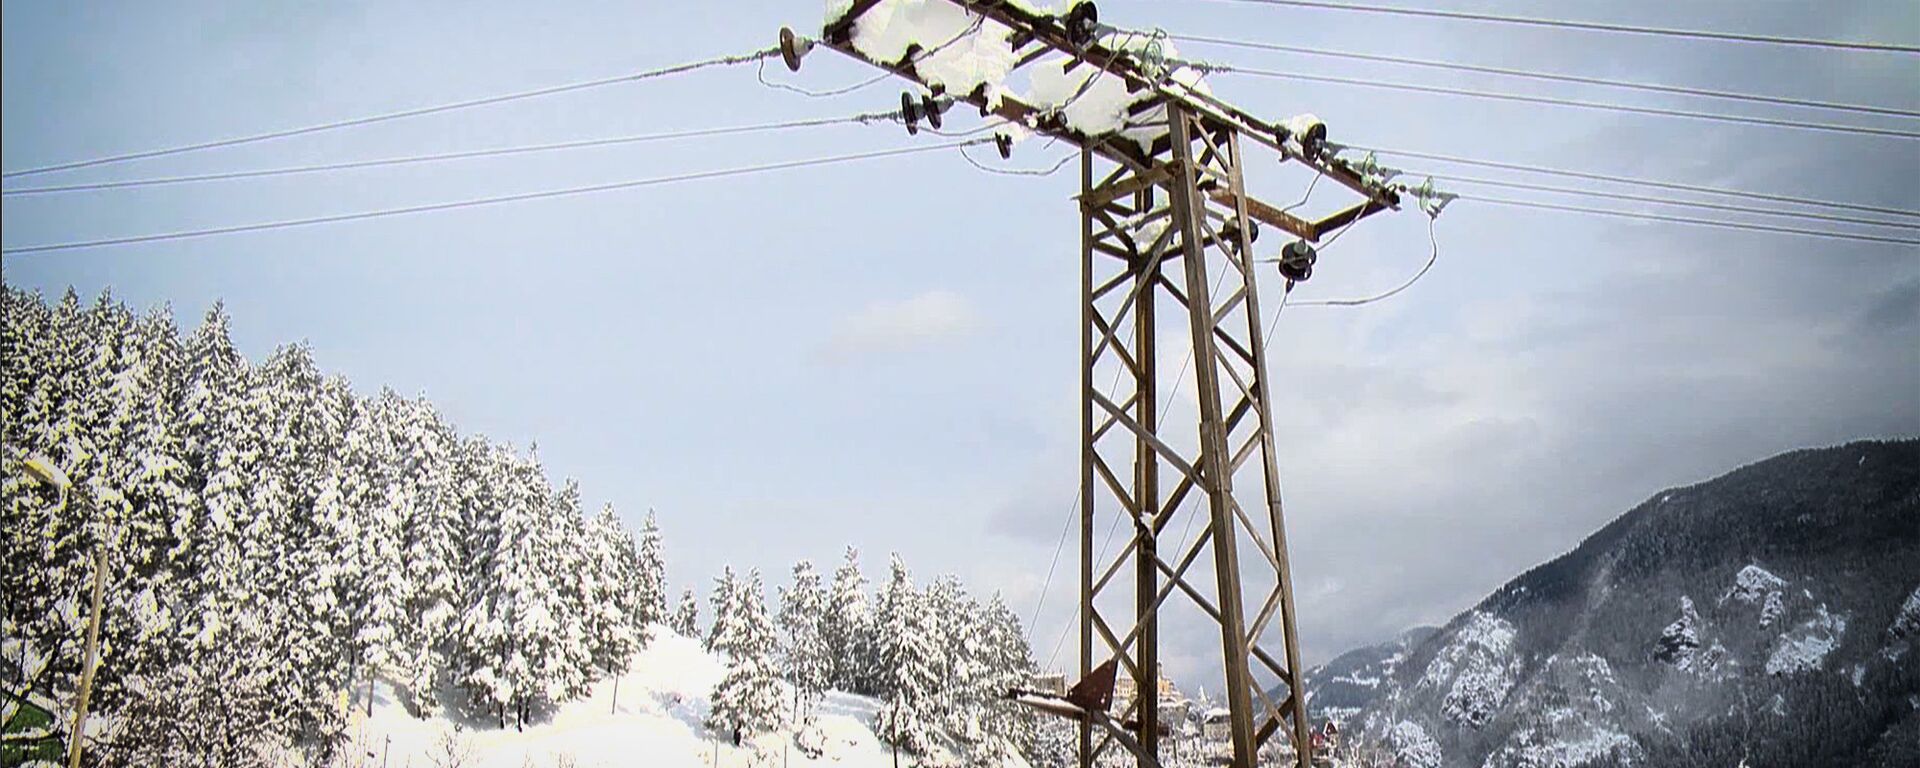 Высоковольтная линия электропередач зимой в высокогорном Хулойском районе Аджарии - Sputnik Грузия, 1920, 17.02.2021